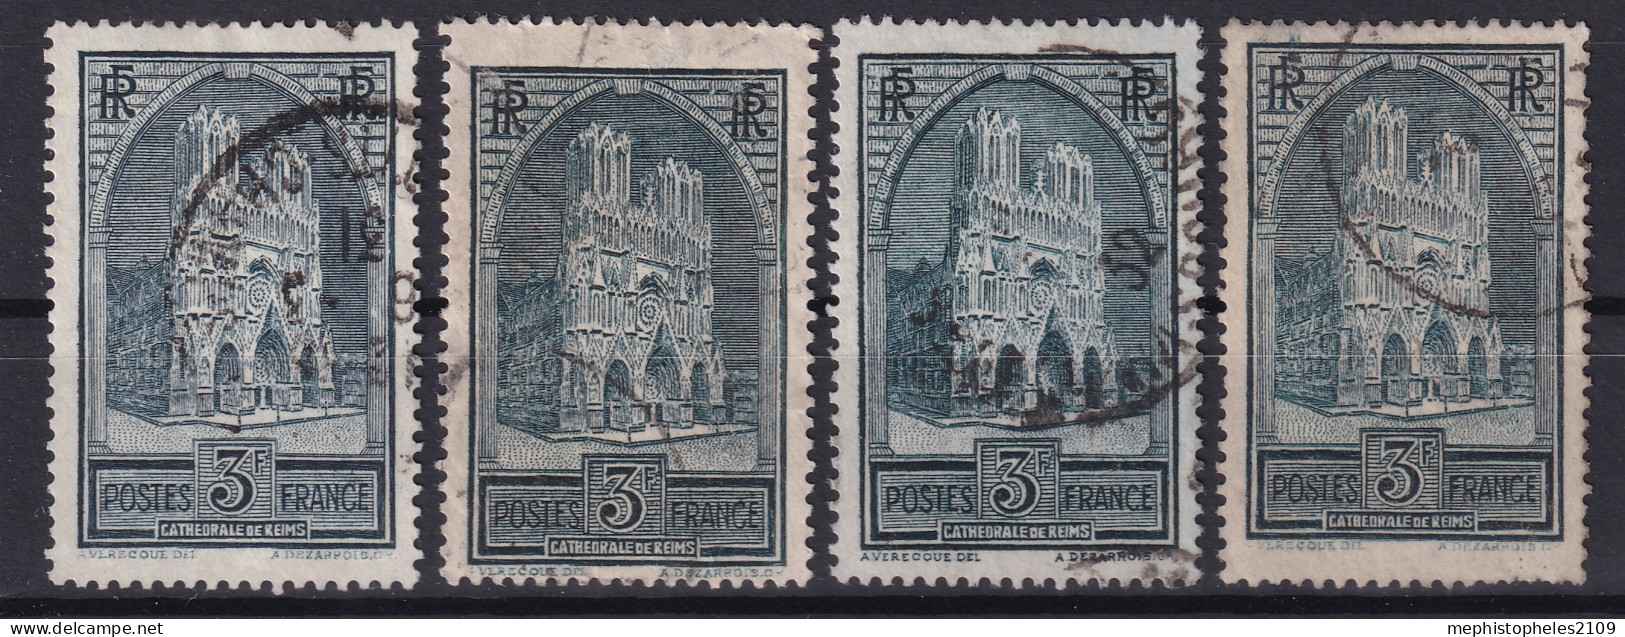 FRANCE 1929/31 - Canceled - YT 259, 259a, 259b, 259c - Reims, All 4 Types! - Gebruikt